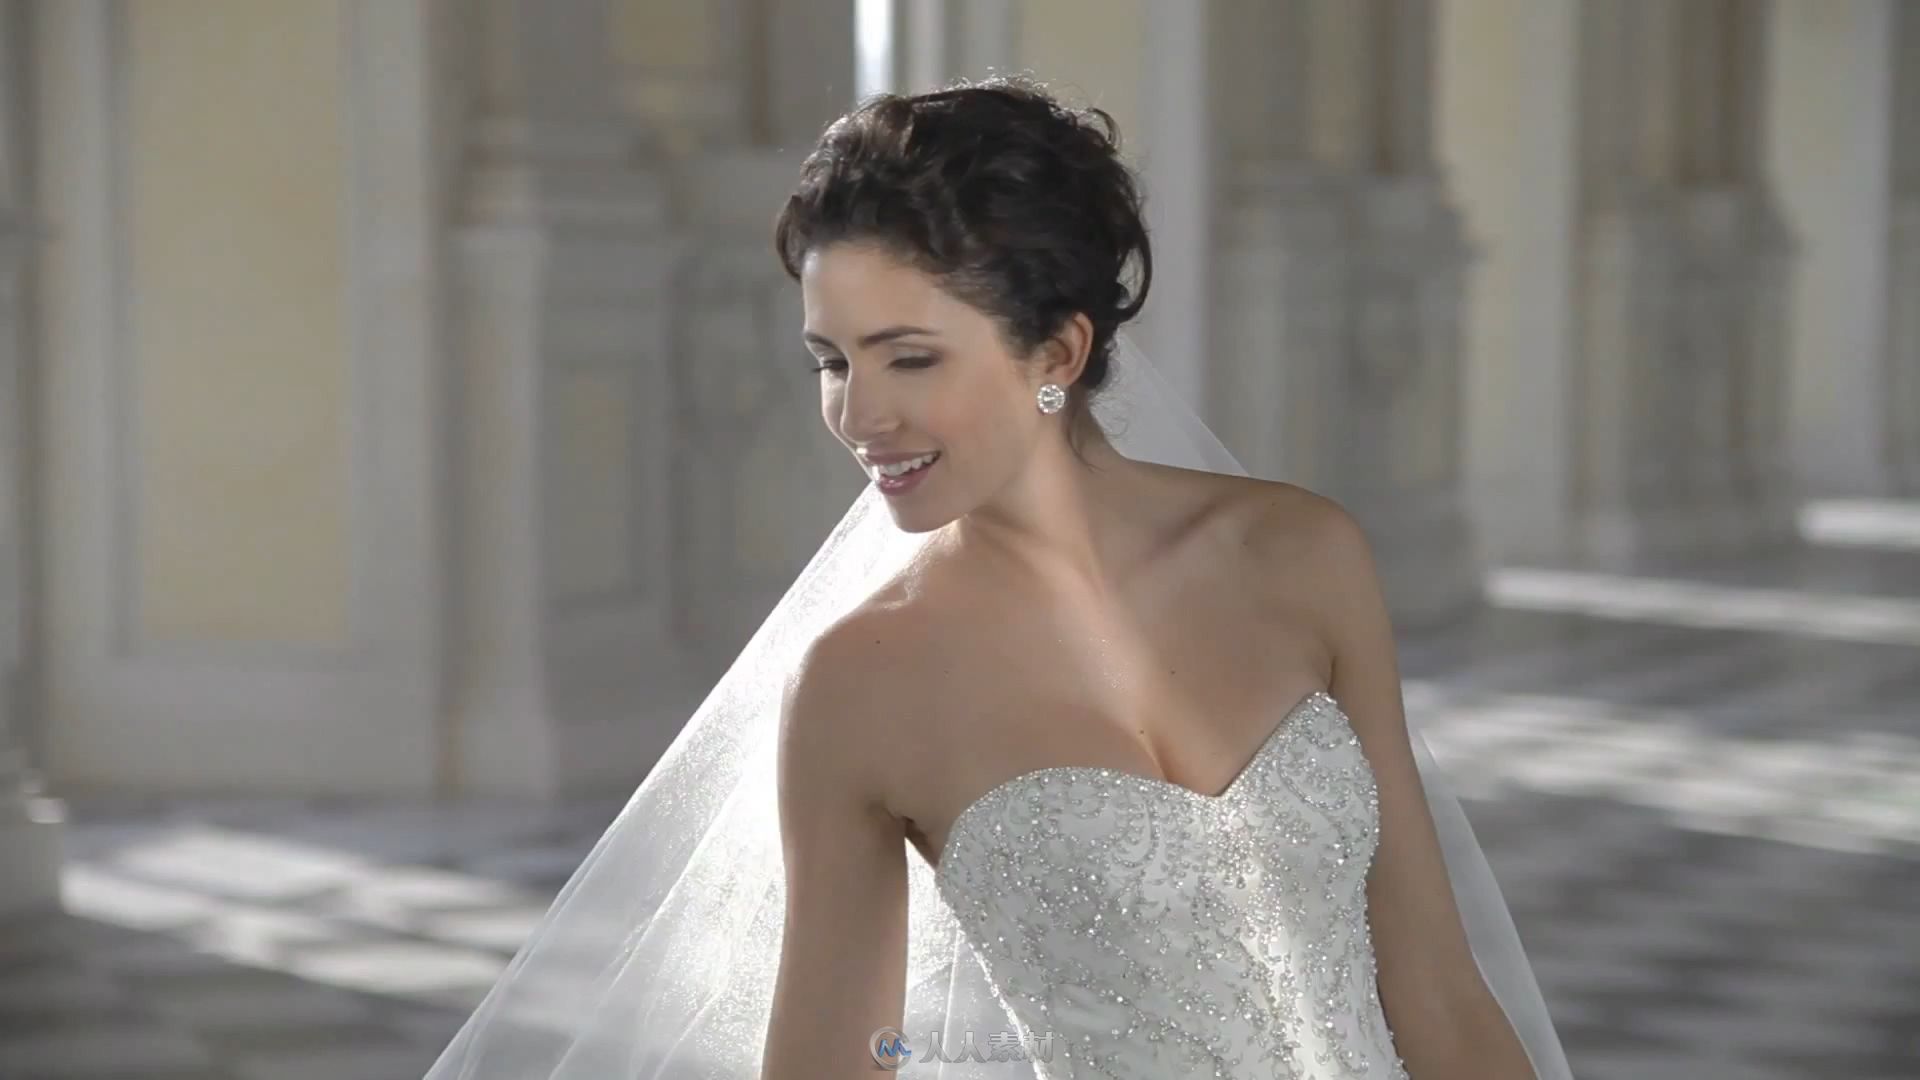 婚纱美女服装展示美丽新娘宣传片蒂米琪婚紗高清实拍视频素材